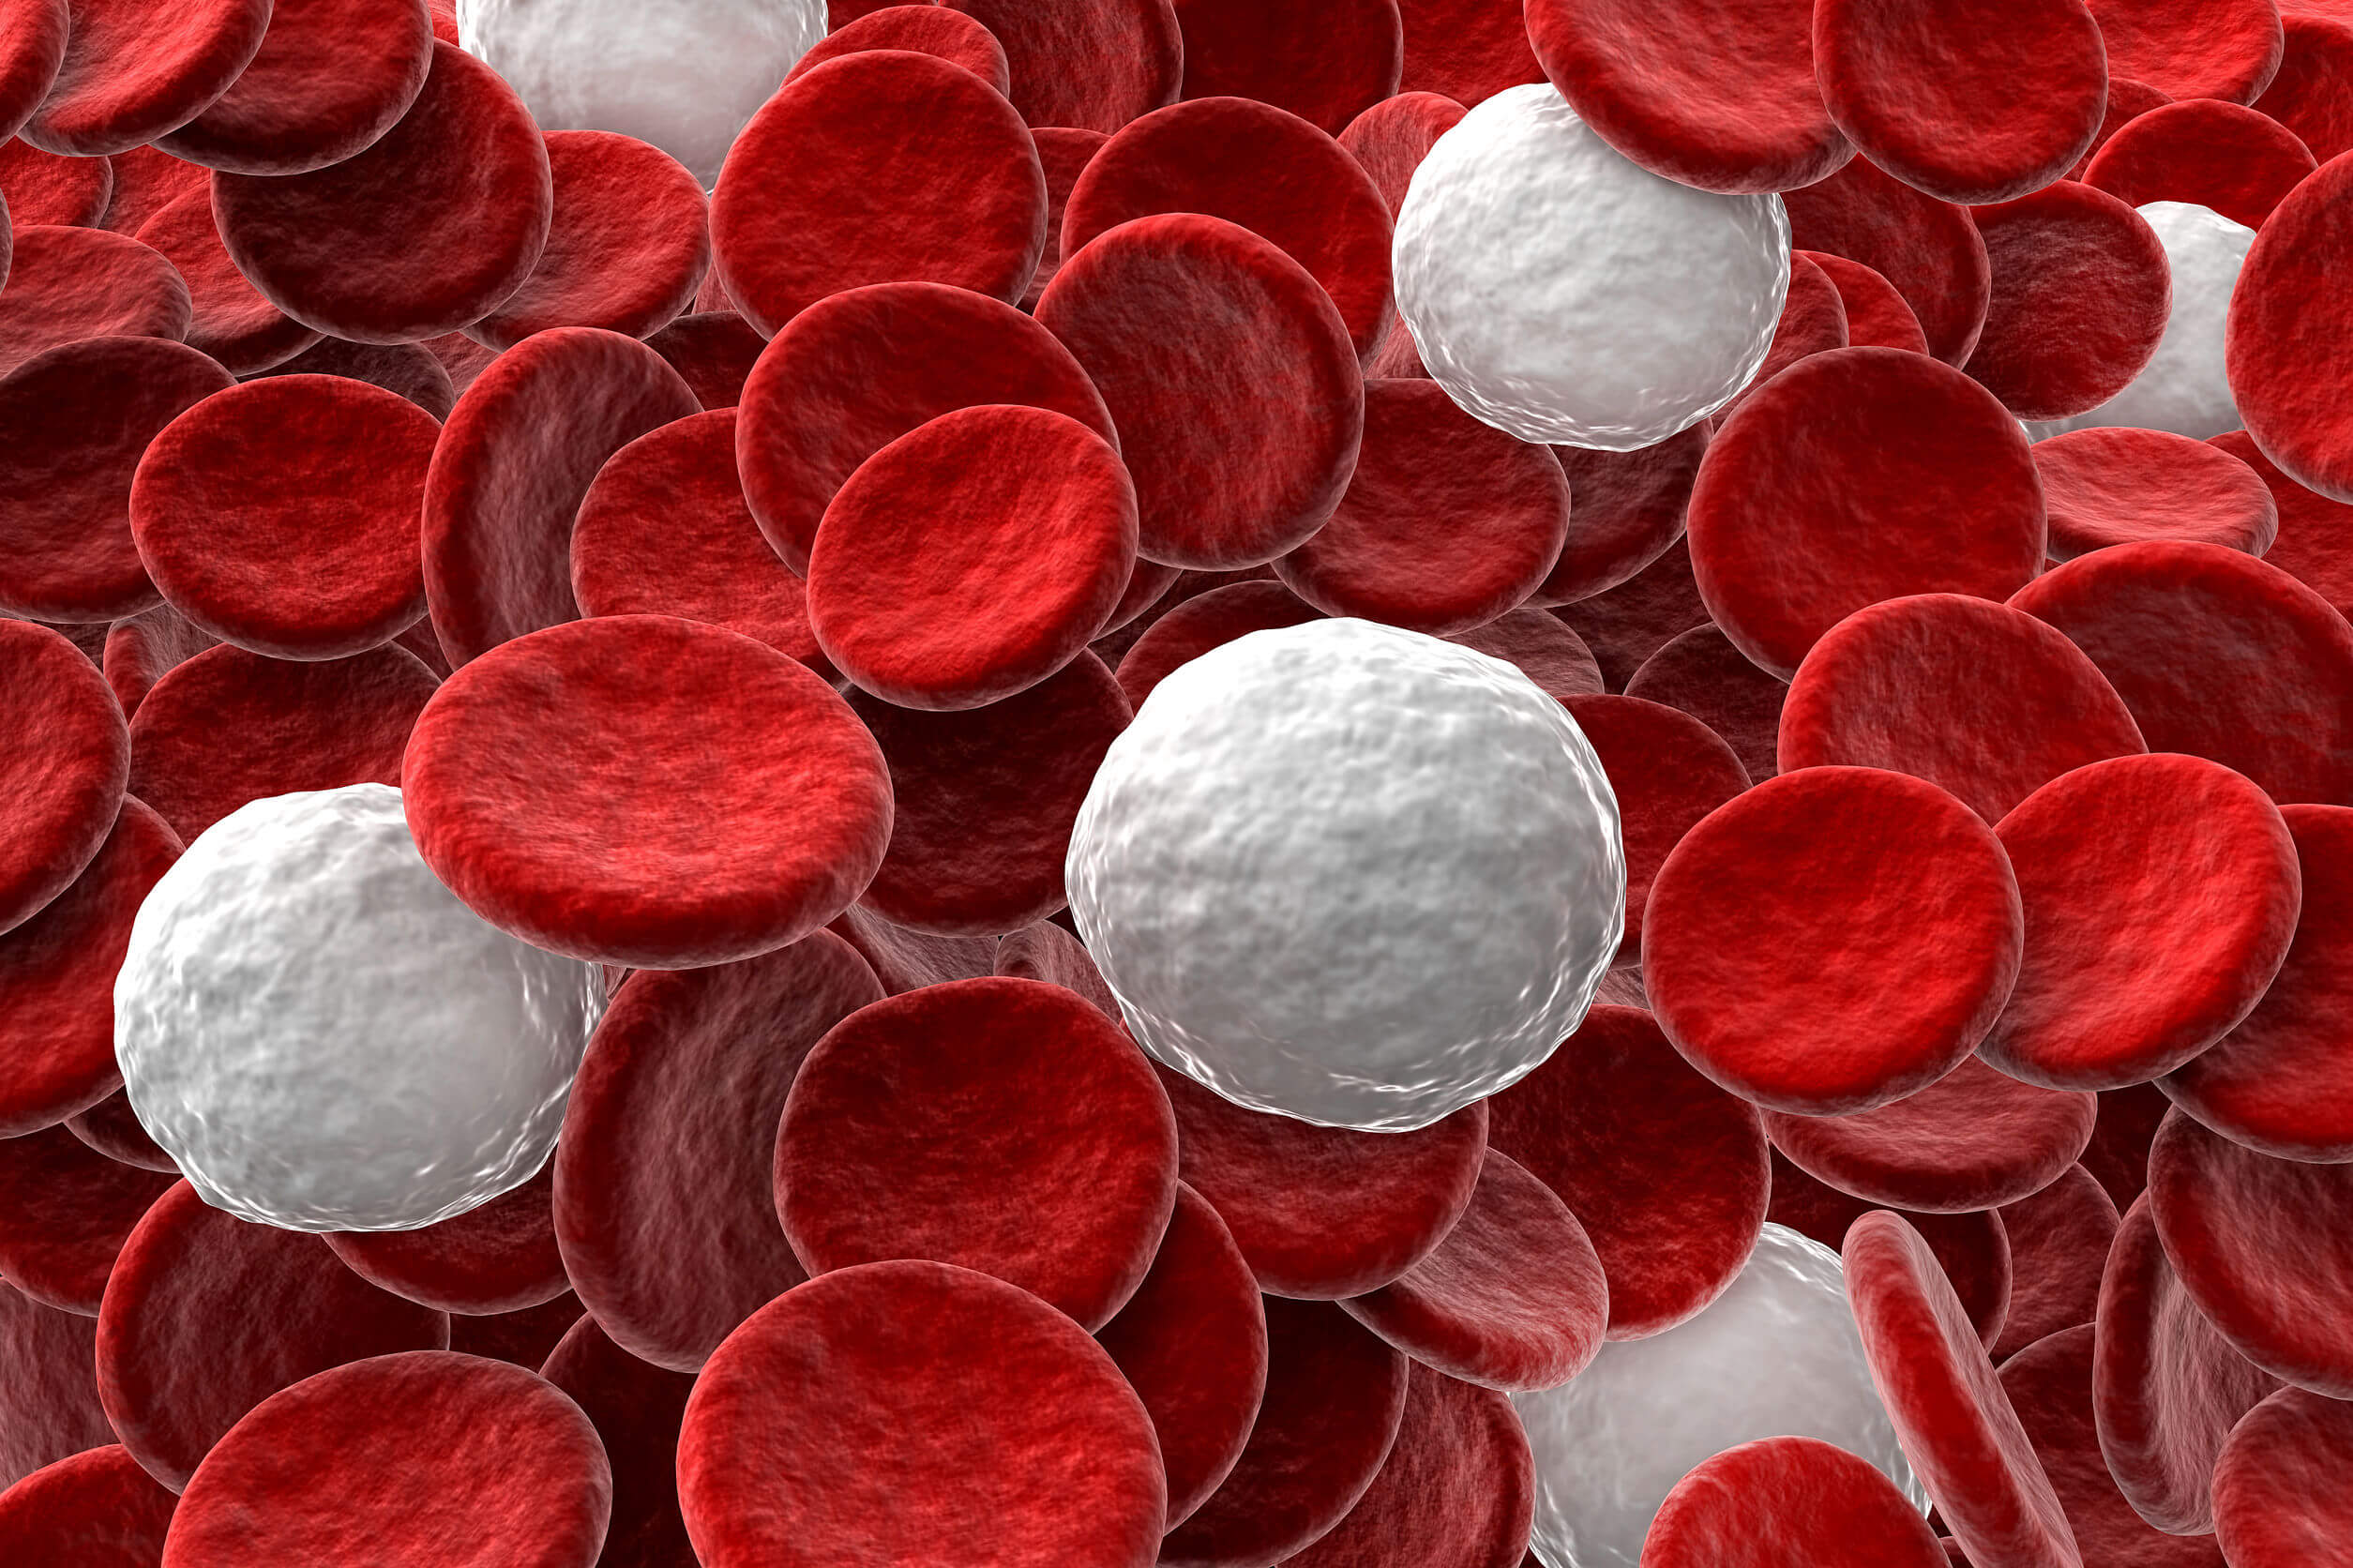 Le plus grand nombre de cellules Natural Killer se trouve dans le sang.